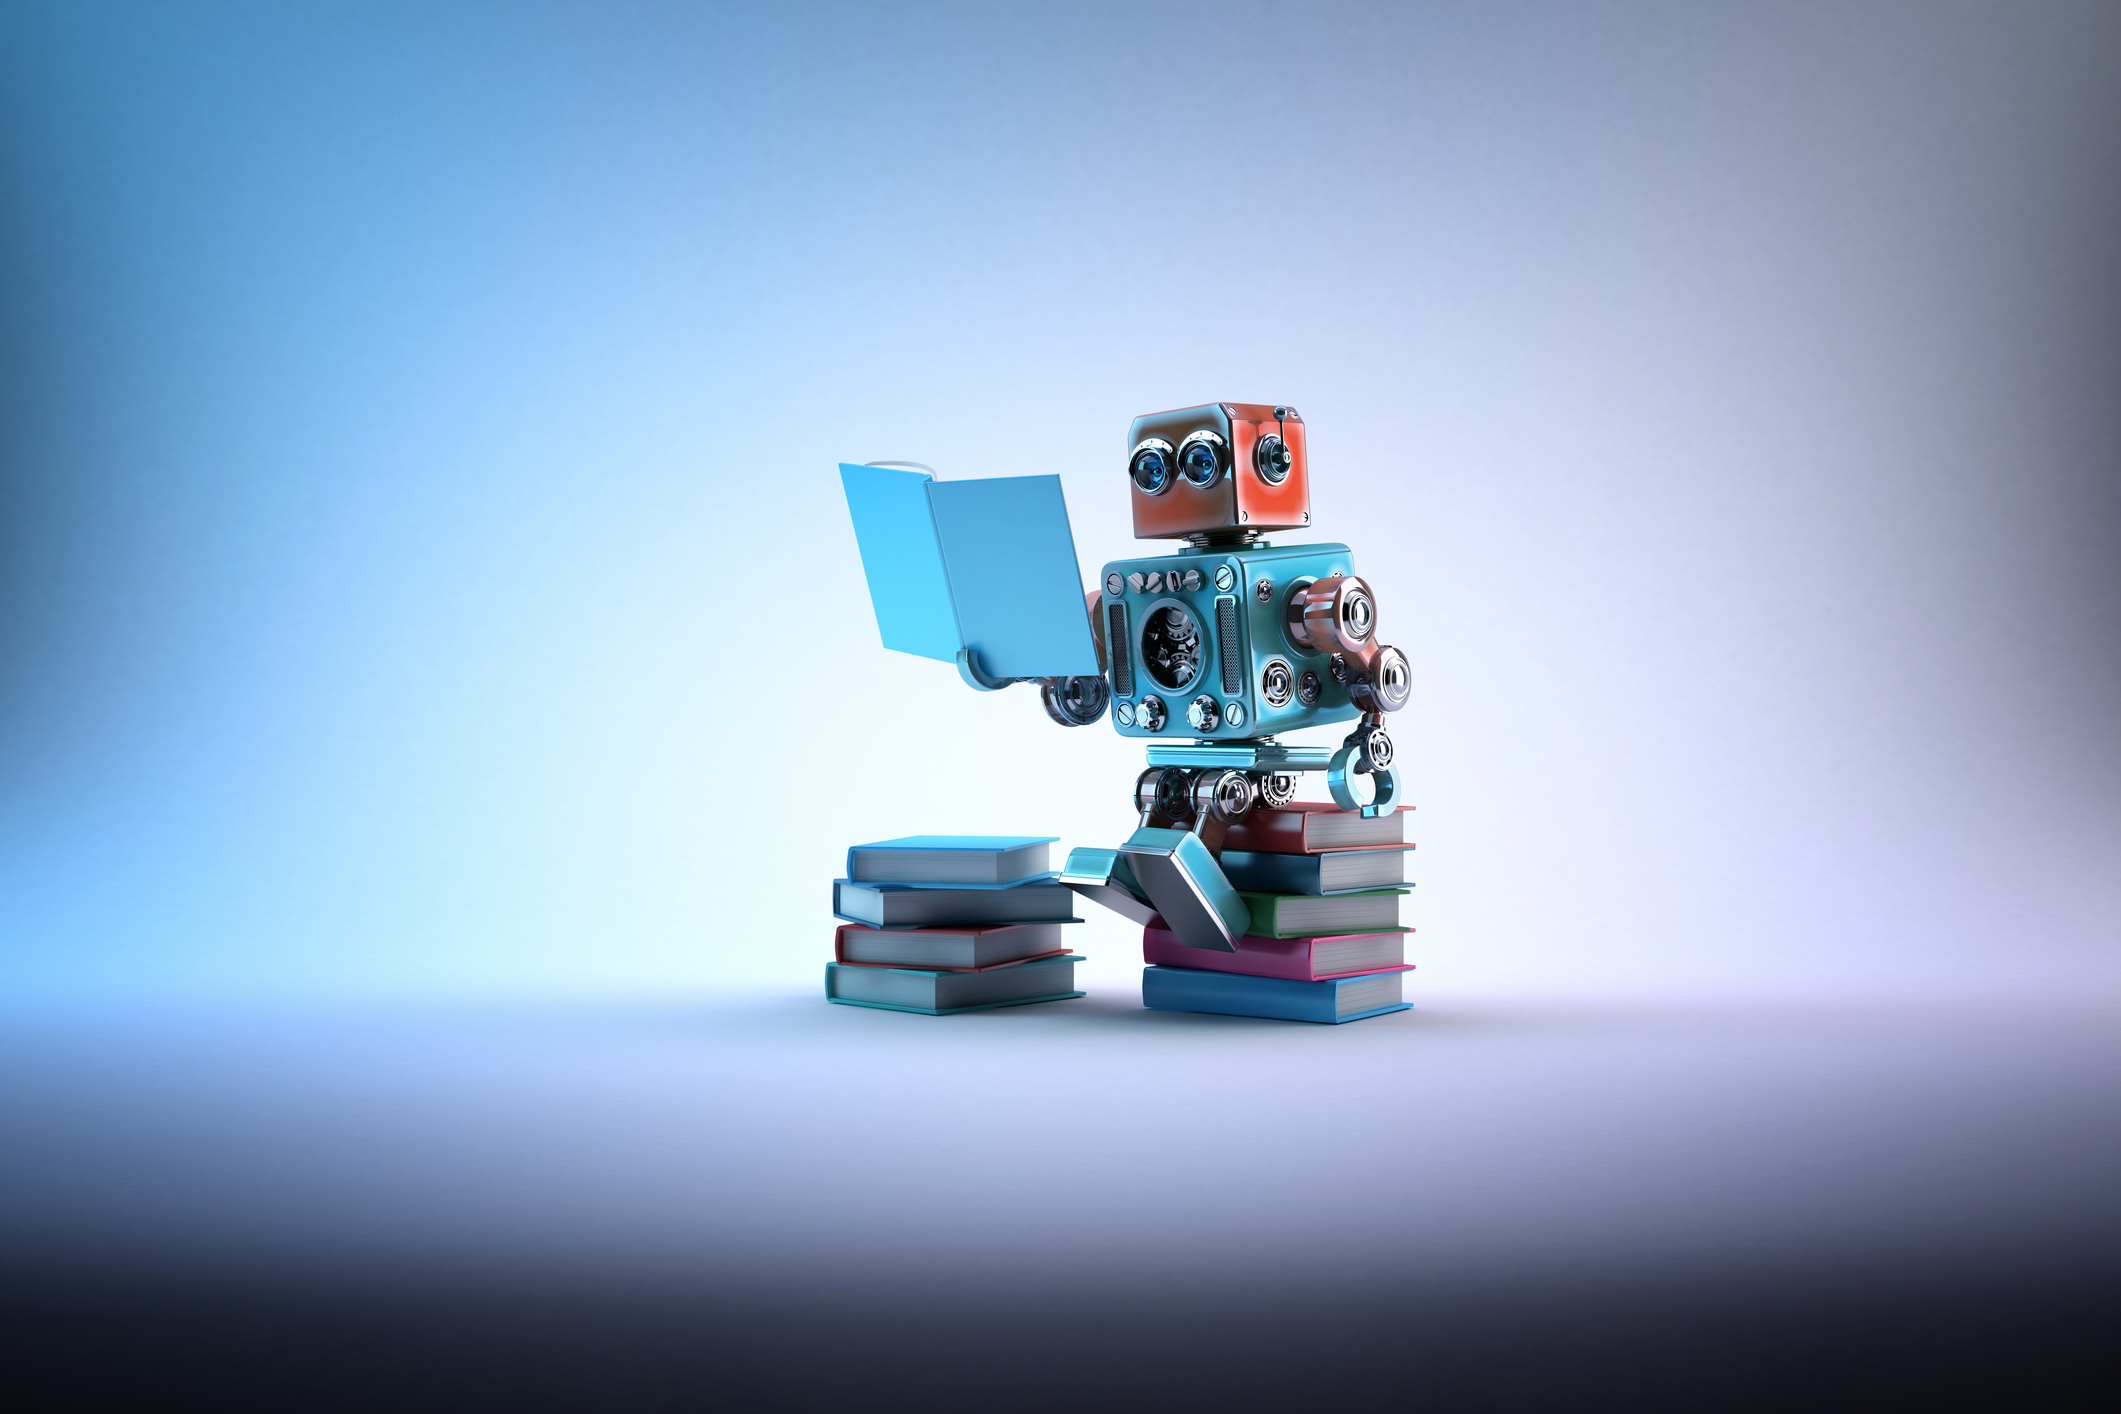 Robot assis sur un tas de livres